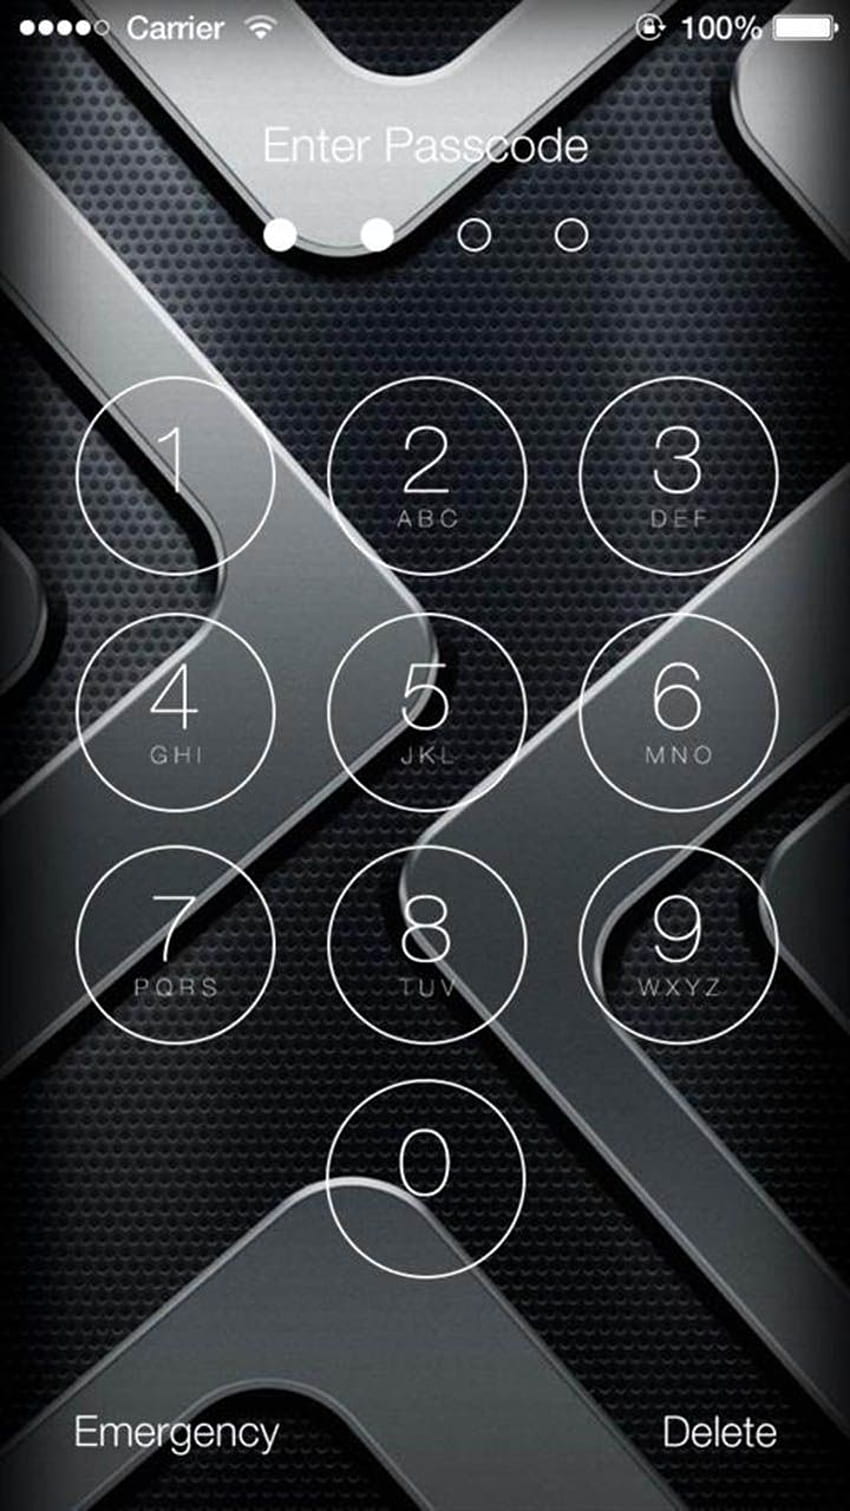 Phone Locker - de bloqueo - : Appstore para Android, código de acceso fondo de pantalla del teléfono